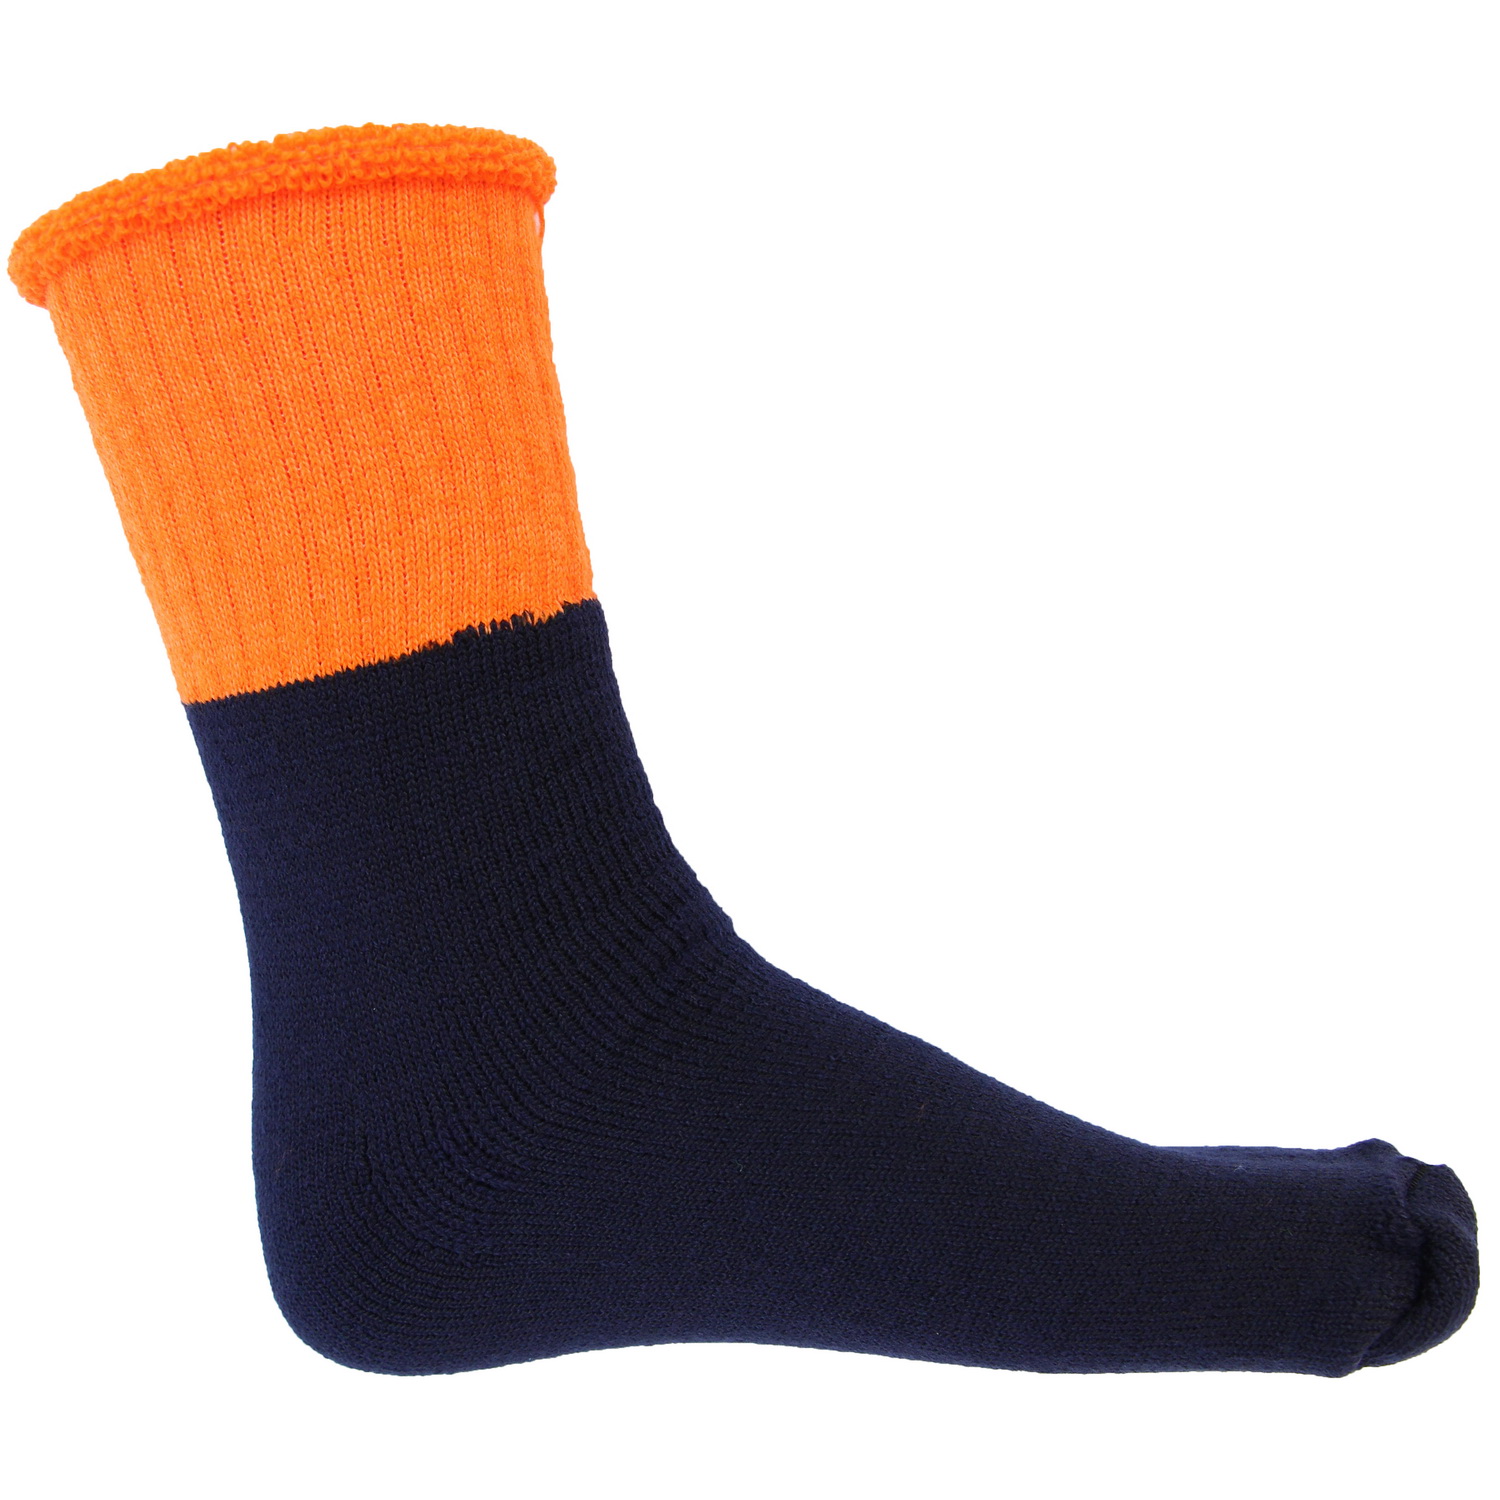 HiVis 2 Tone Woolen Socks - 3 pair pack